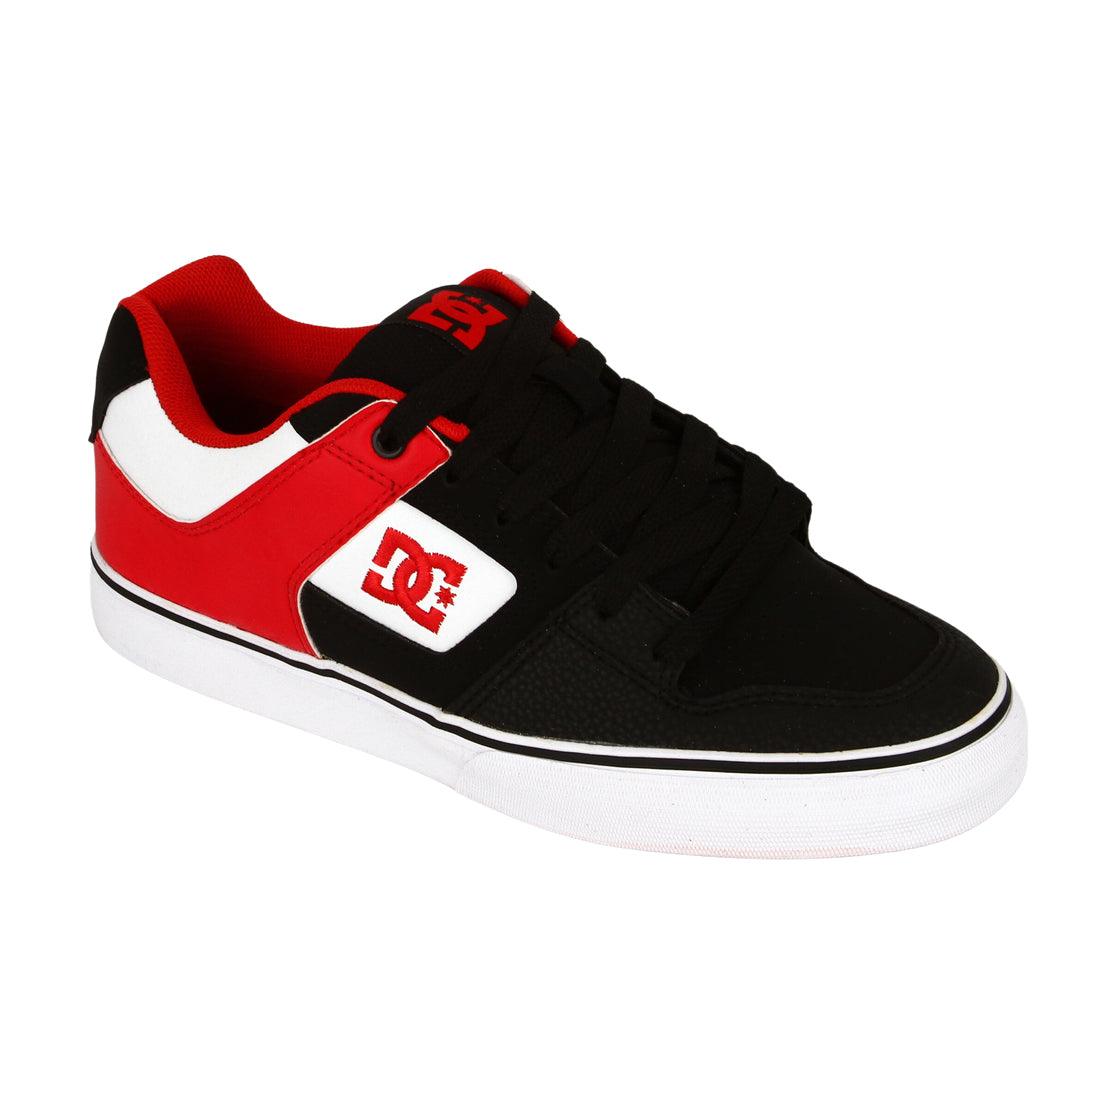 Zapatillas Dc Pure Negro Rojo Blanco - Indy